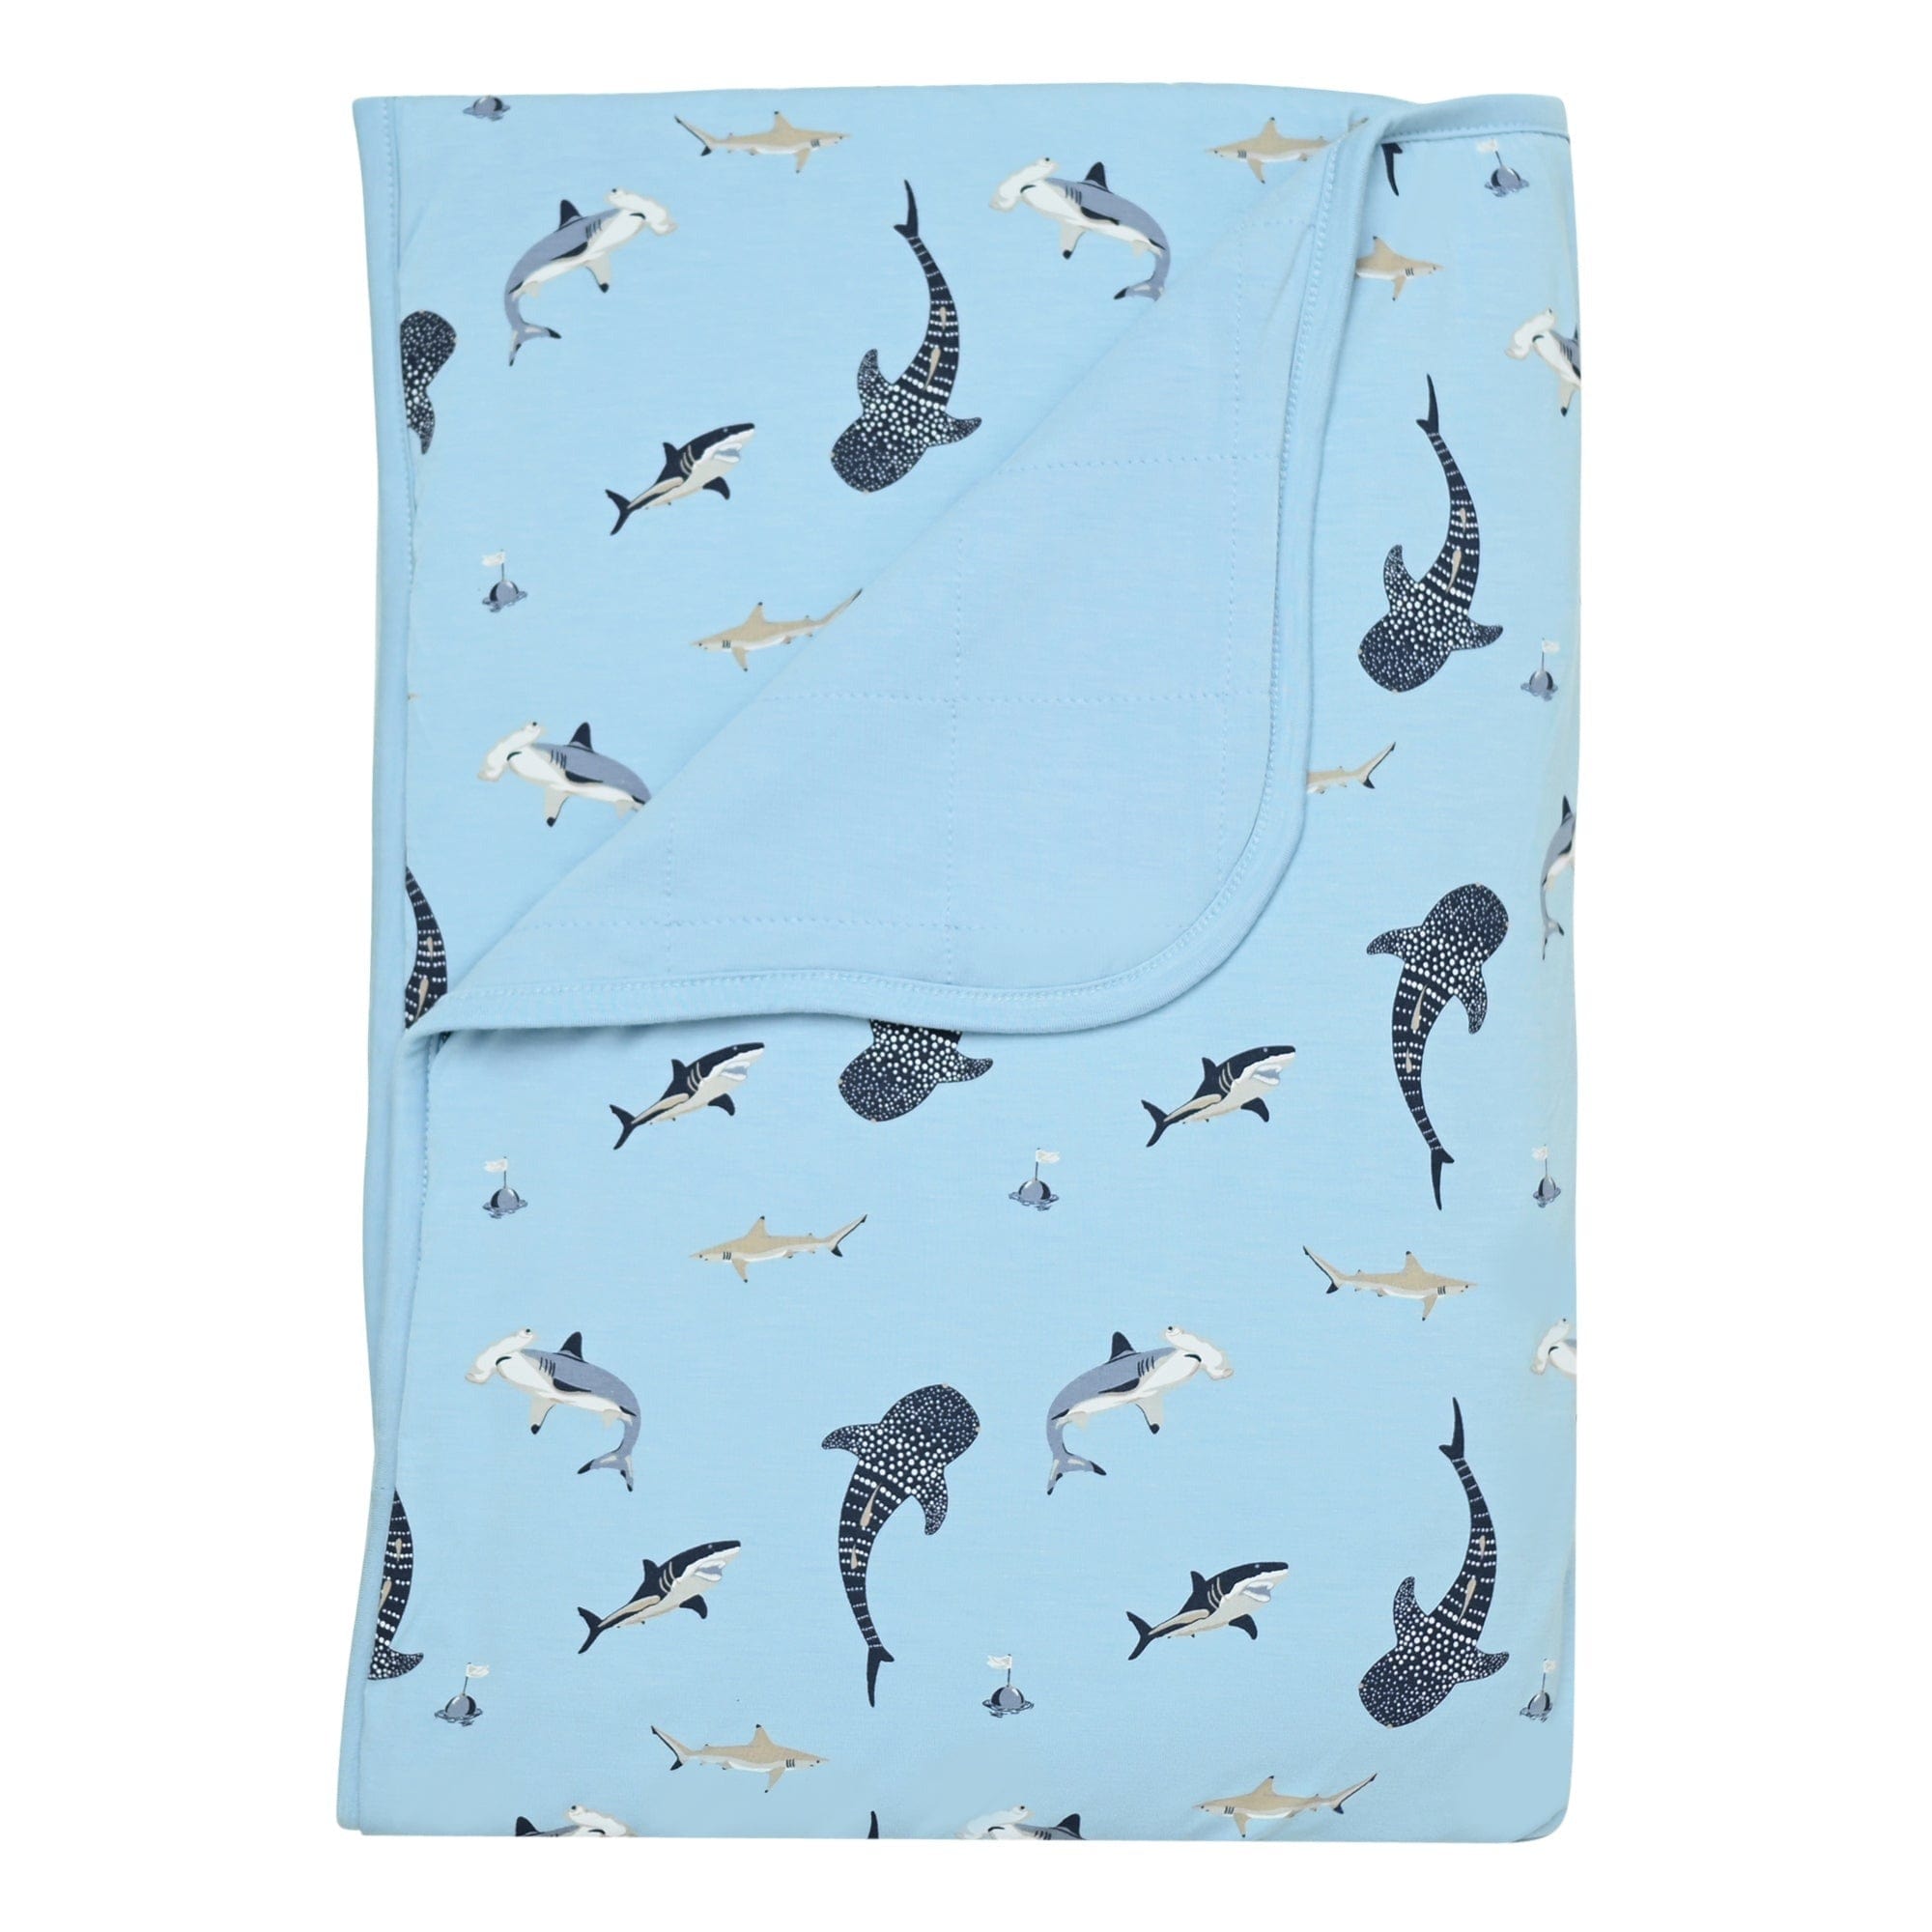 http://kytebaby.com/cdn/shop/products/kyte-baby-toddler-blanket-stream-shark-toddler-toddler-blanket-in-stream-shark-31143183843439.jpg?v=1655995930